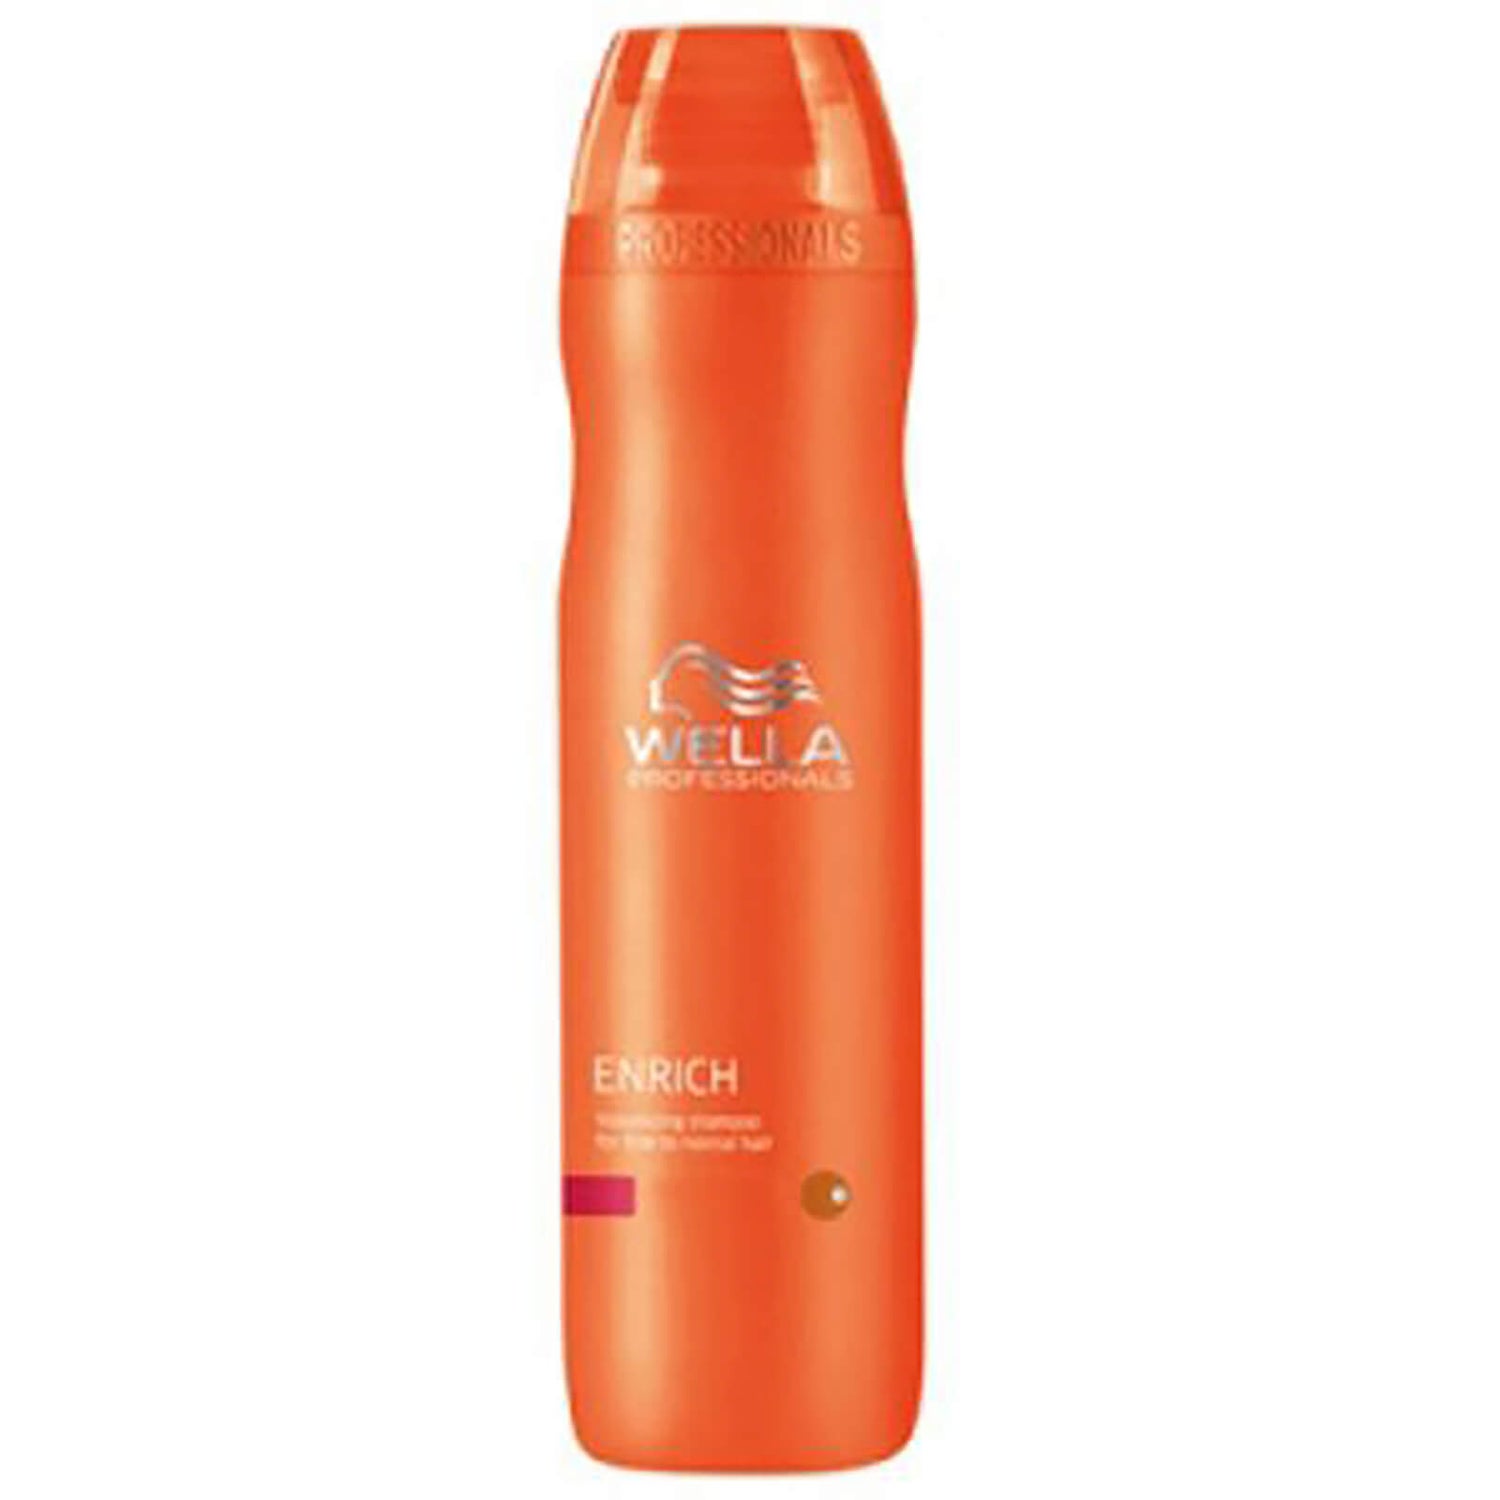 Shampoo Volumizzante Wella Professionals Enrich per capelli sottili e normali (250ml)